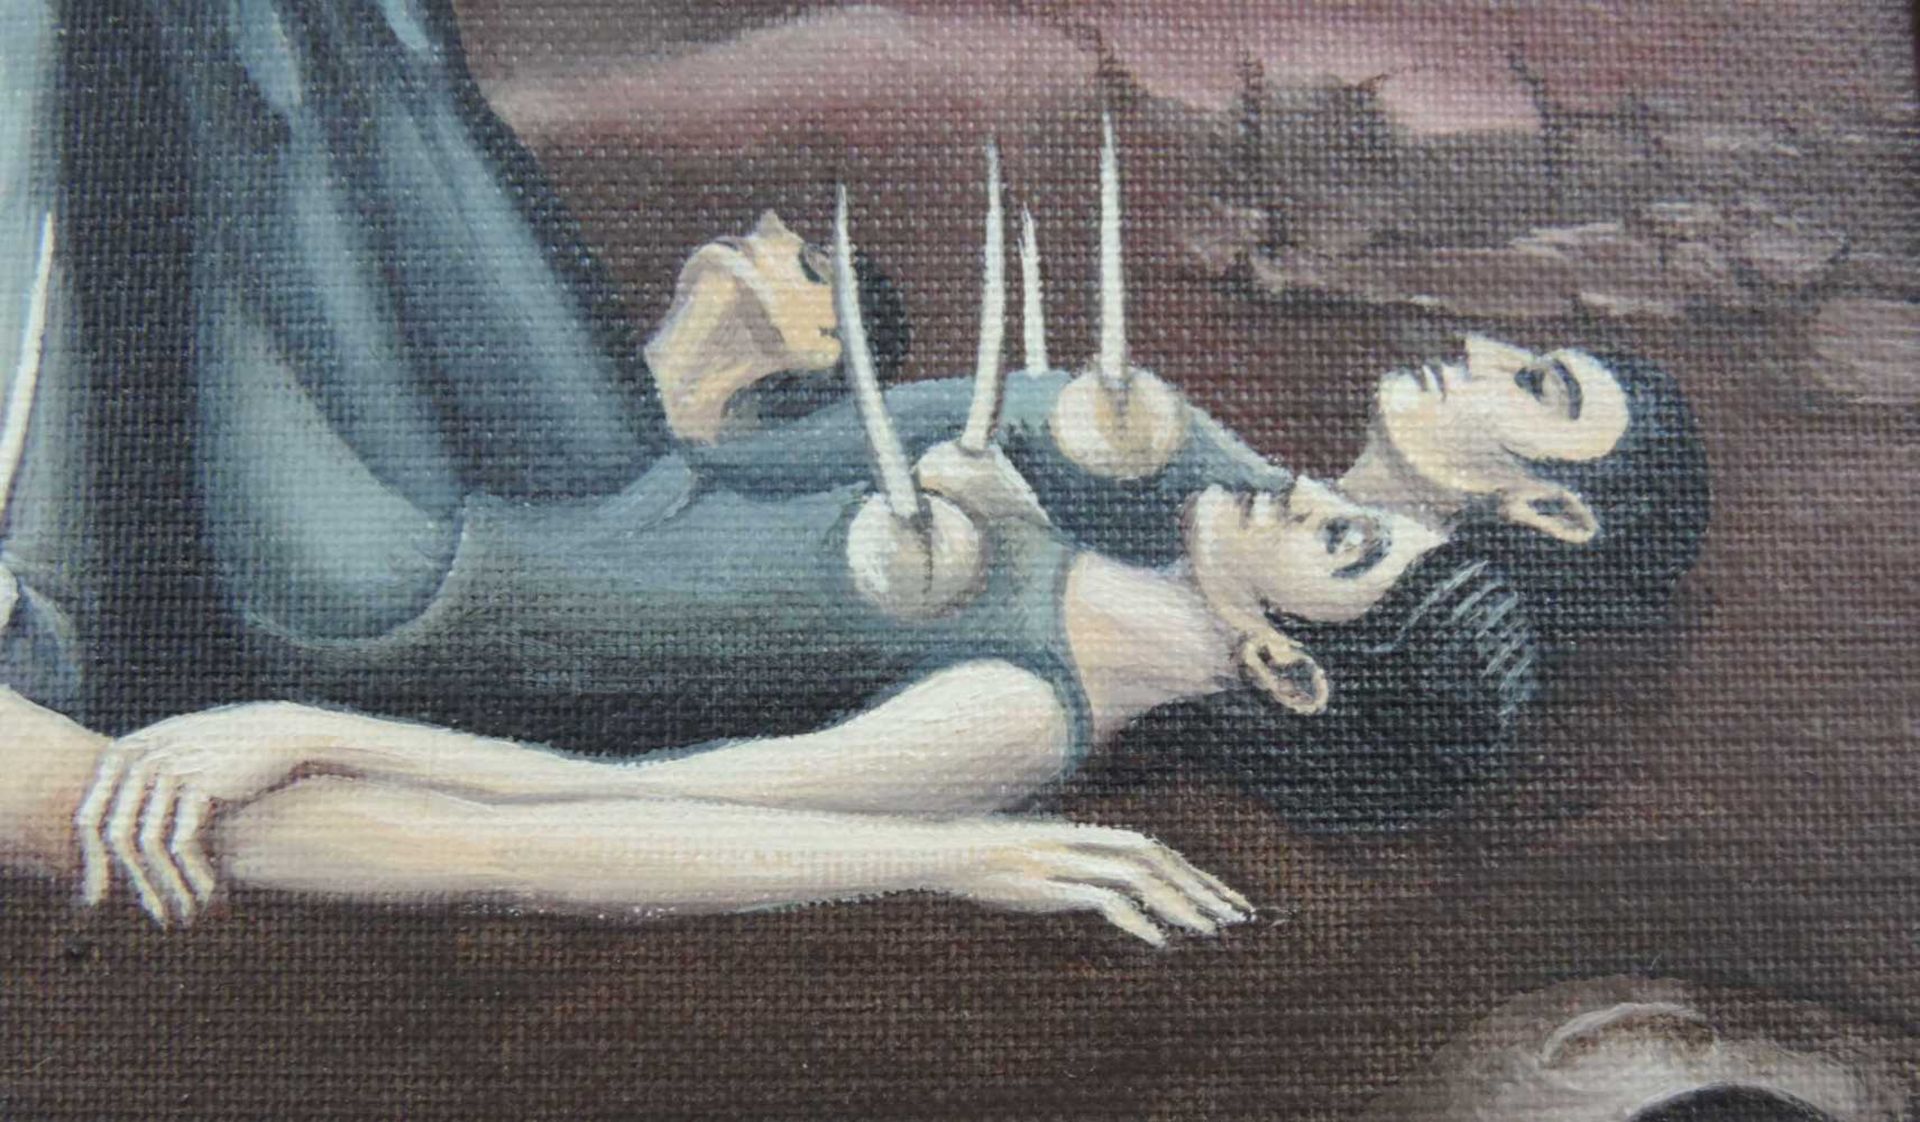 Paul STRUCK (1928 - 2015). "Pulchinella hält Ausschau". 40 cm x 30 cm. Gemälde, Öl auf Leinwand. - Bild 4 aus 7